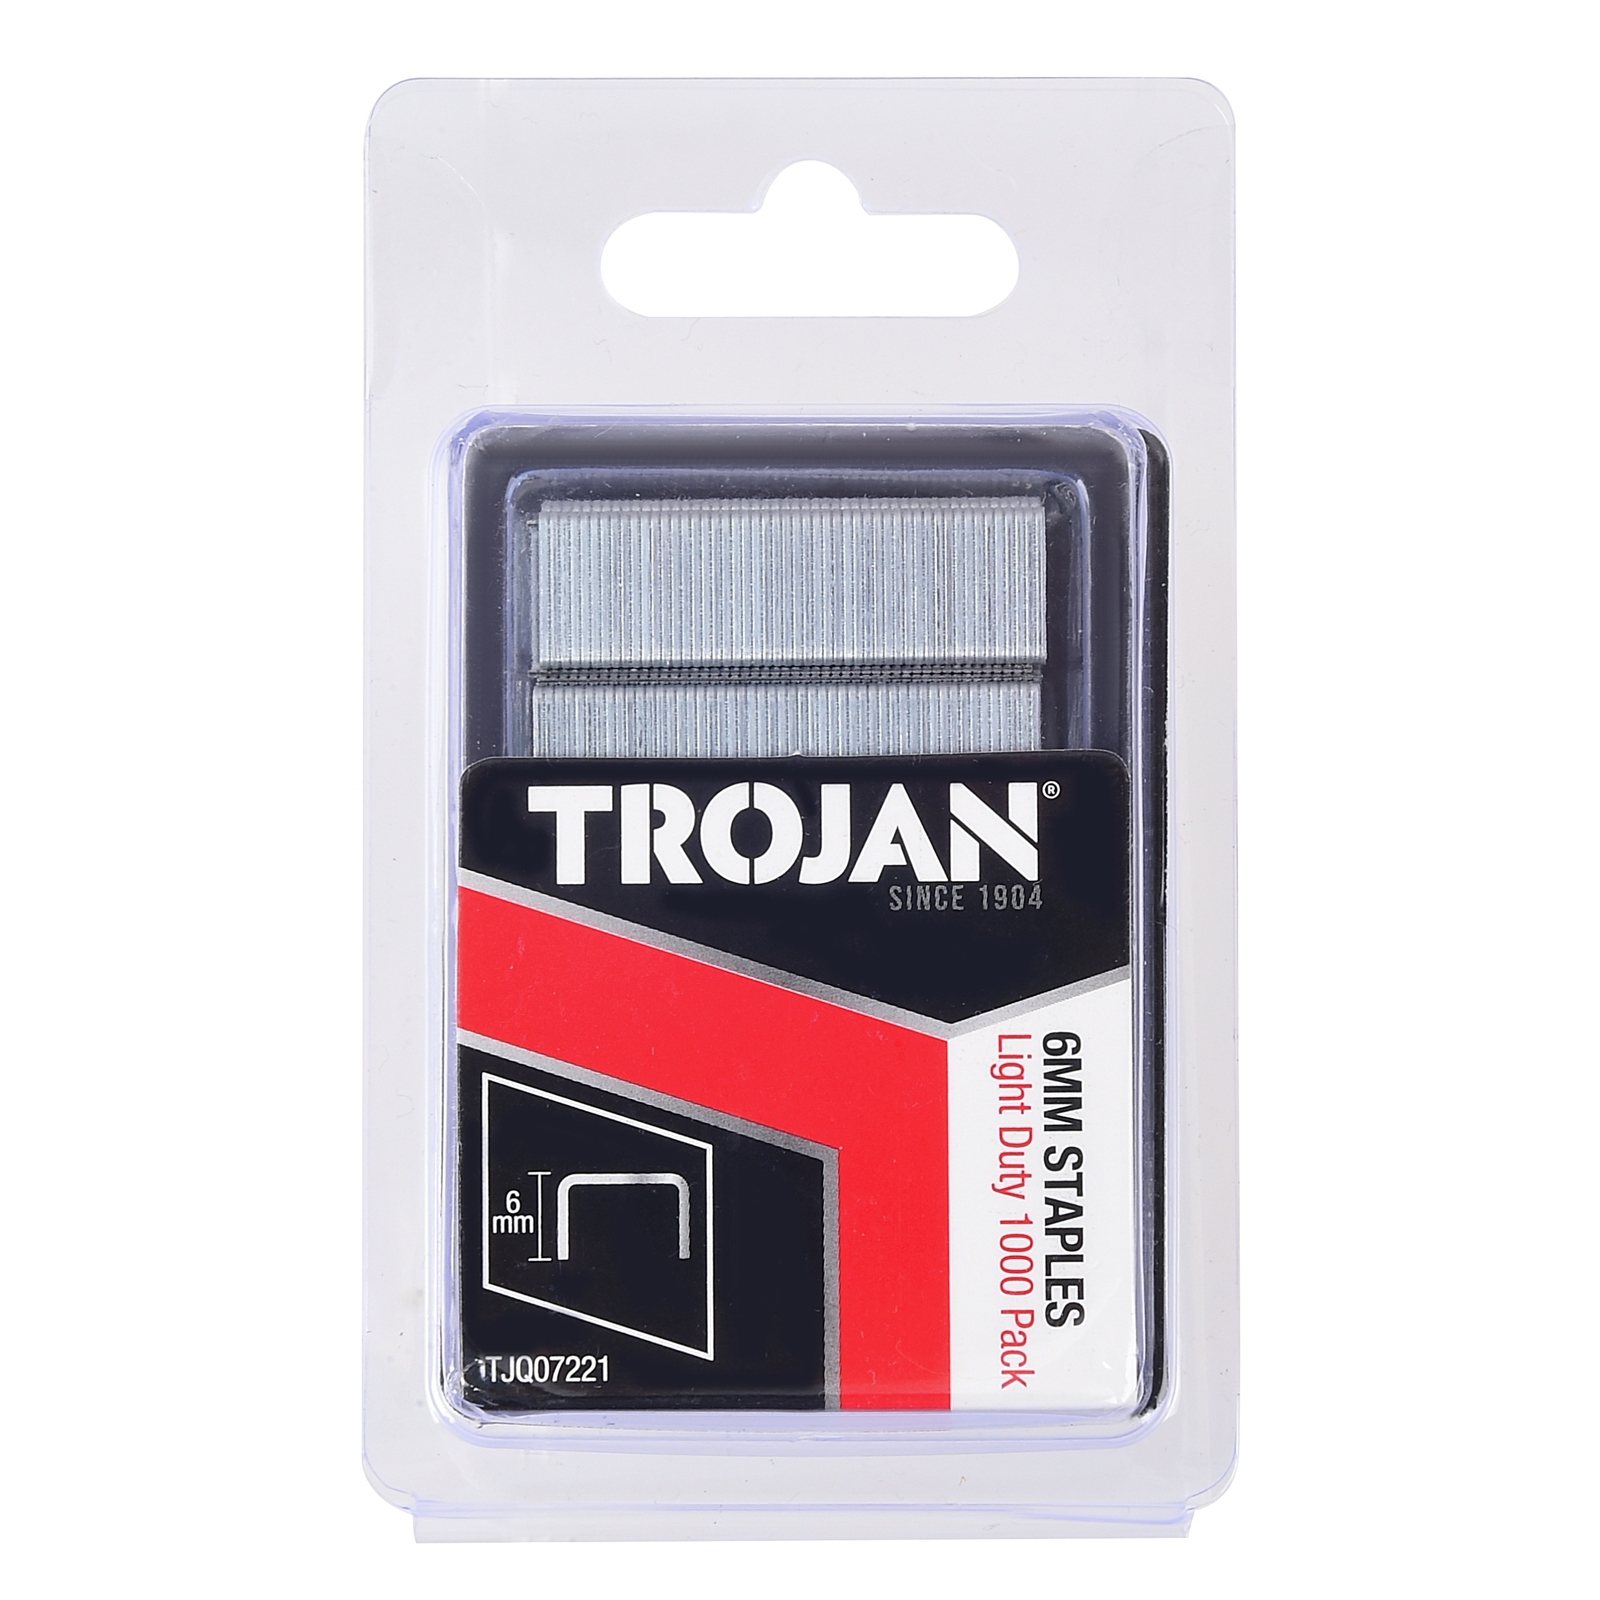 Trojan 6mm Light Duty Staples - 1000 Pack